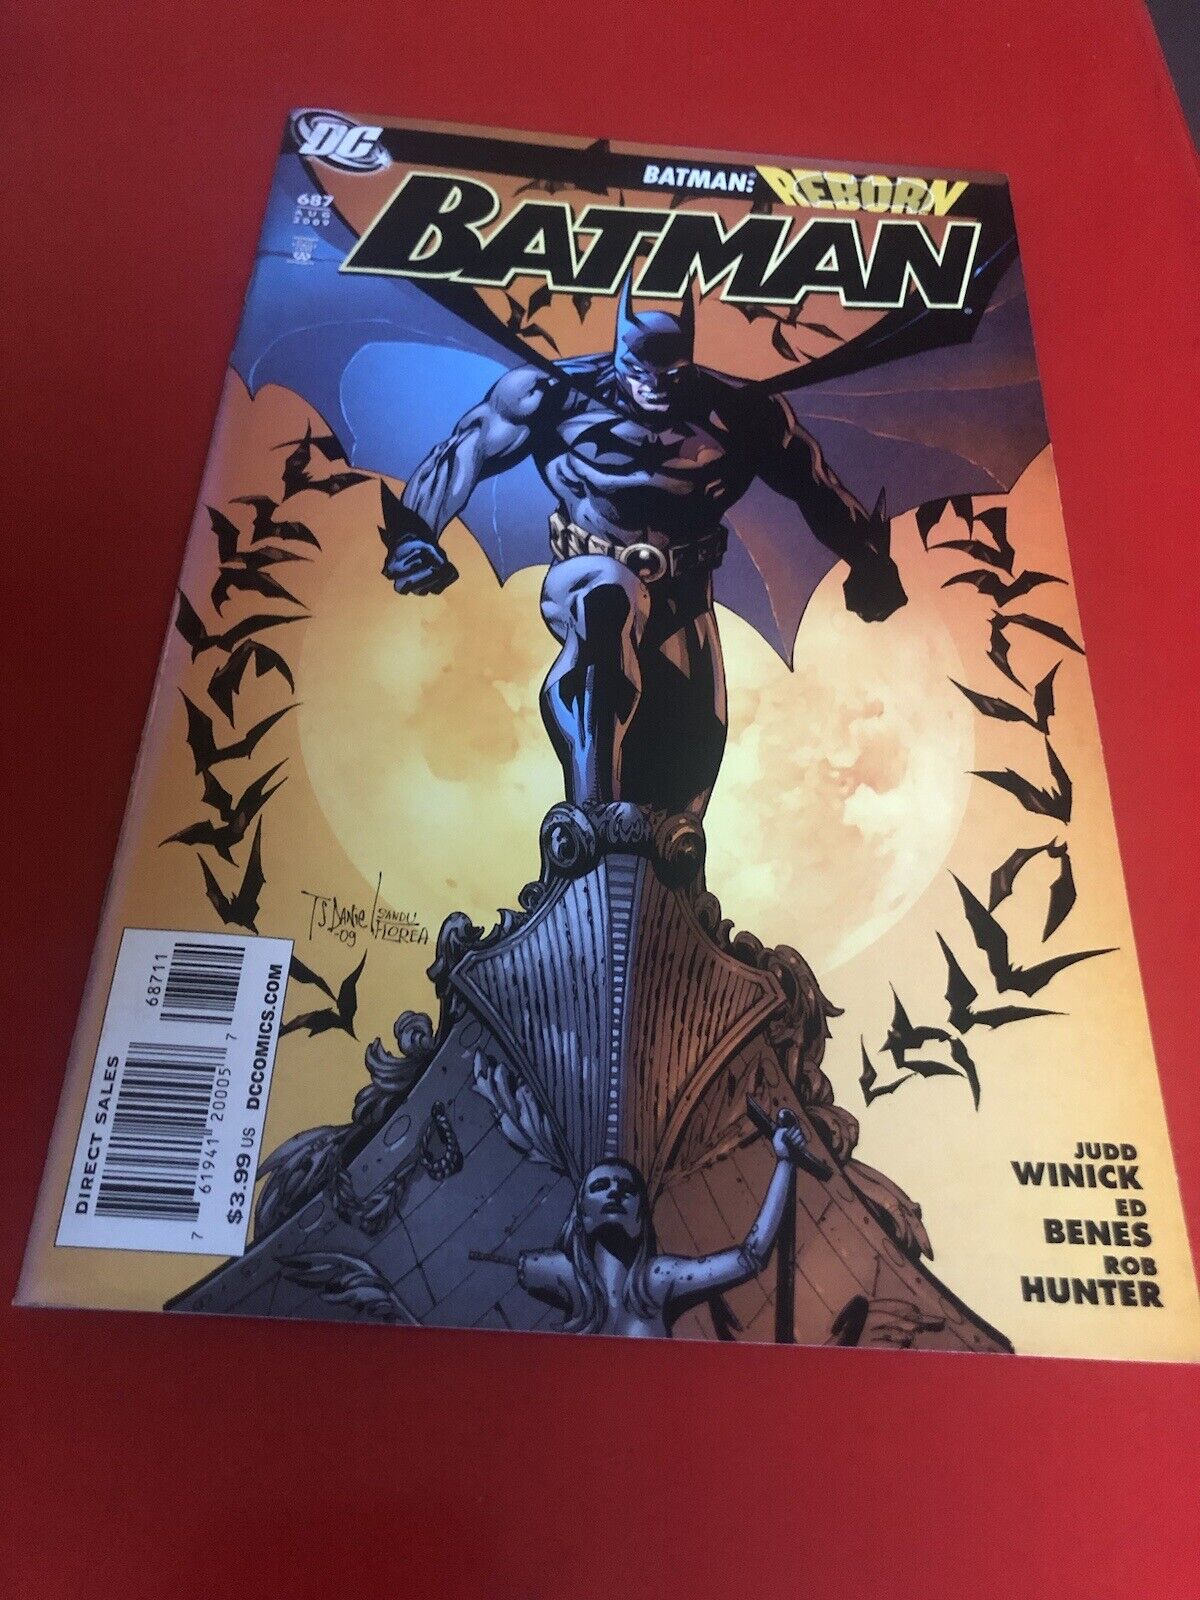 BATMAN #687 2009 DC COMICS BATMAN: REBORN.